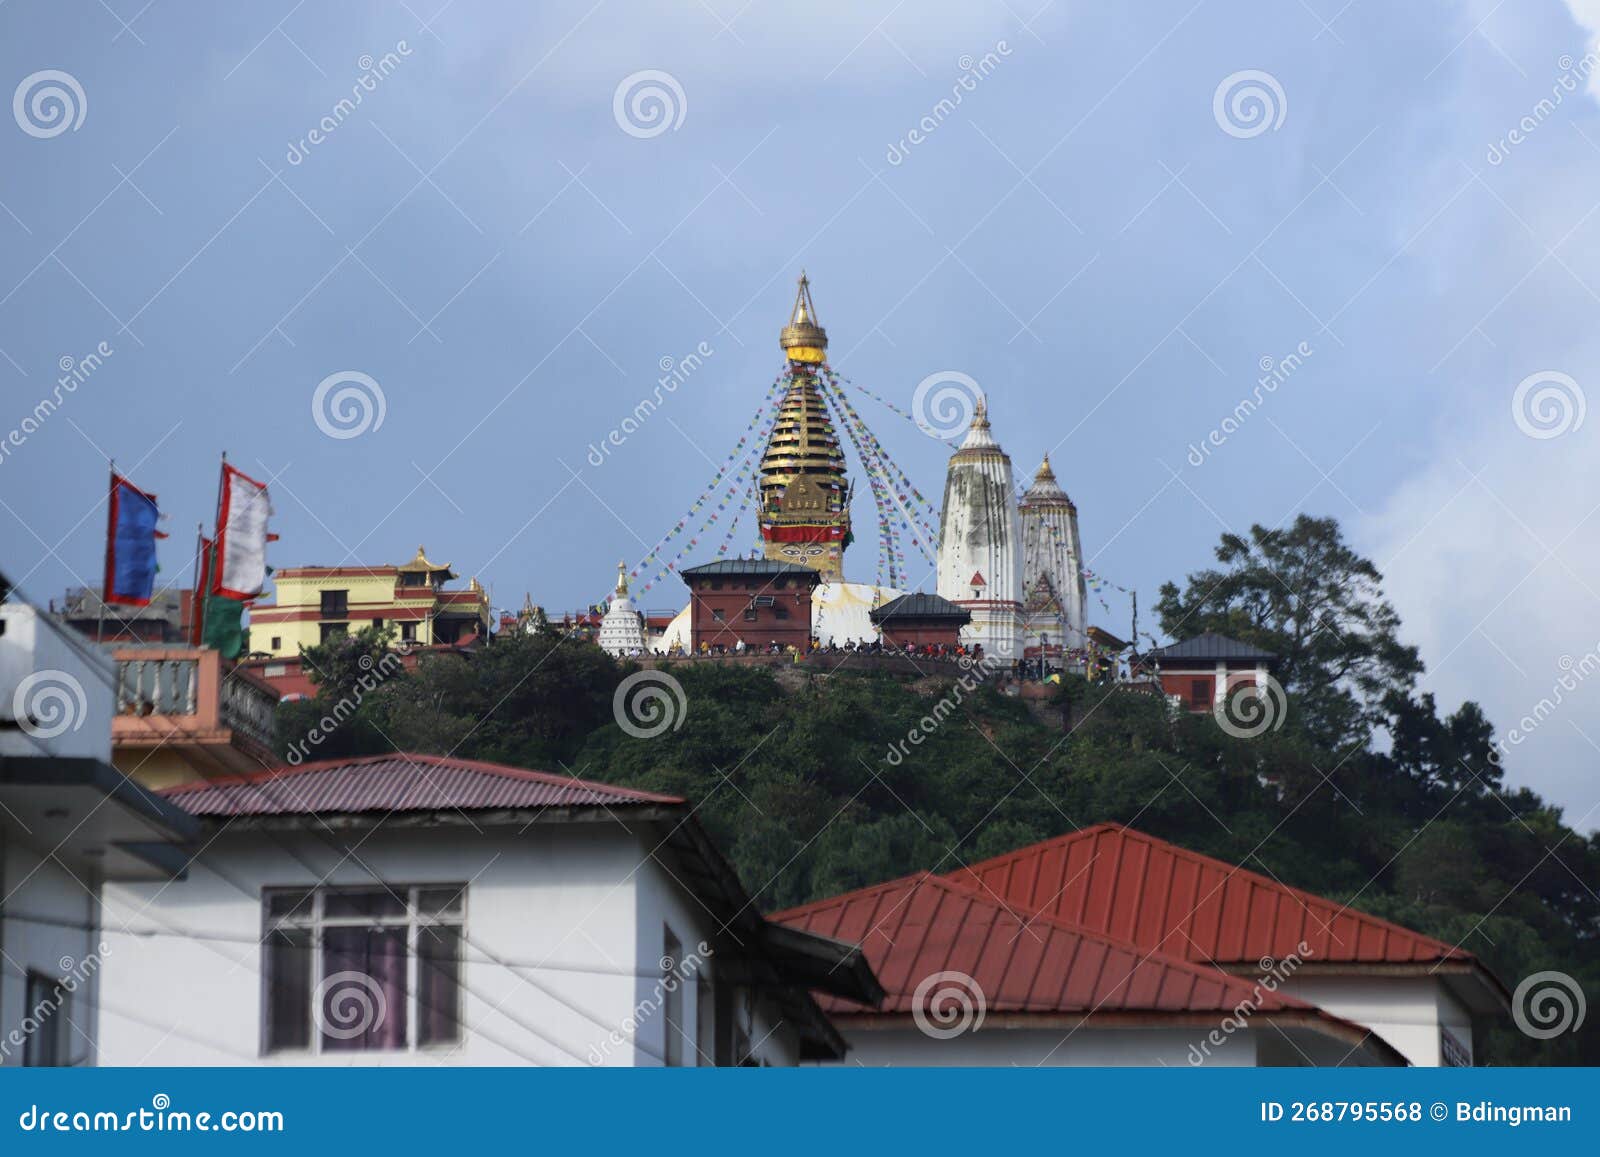 swayambhunath monkey temple - kathmandu, nepal